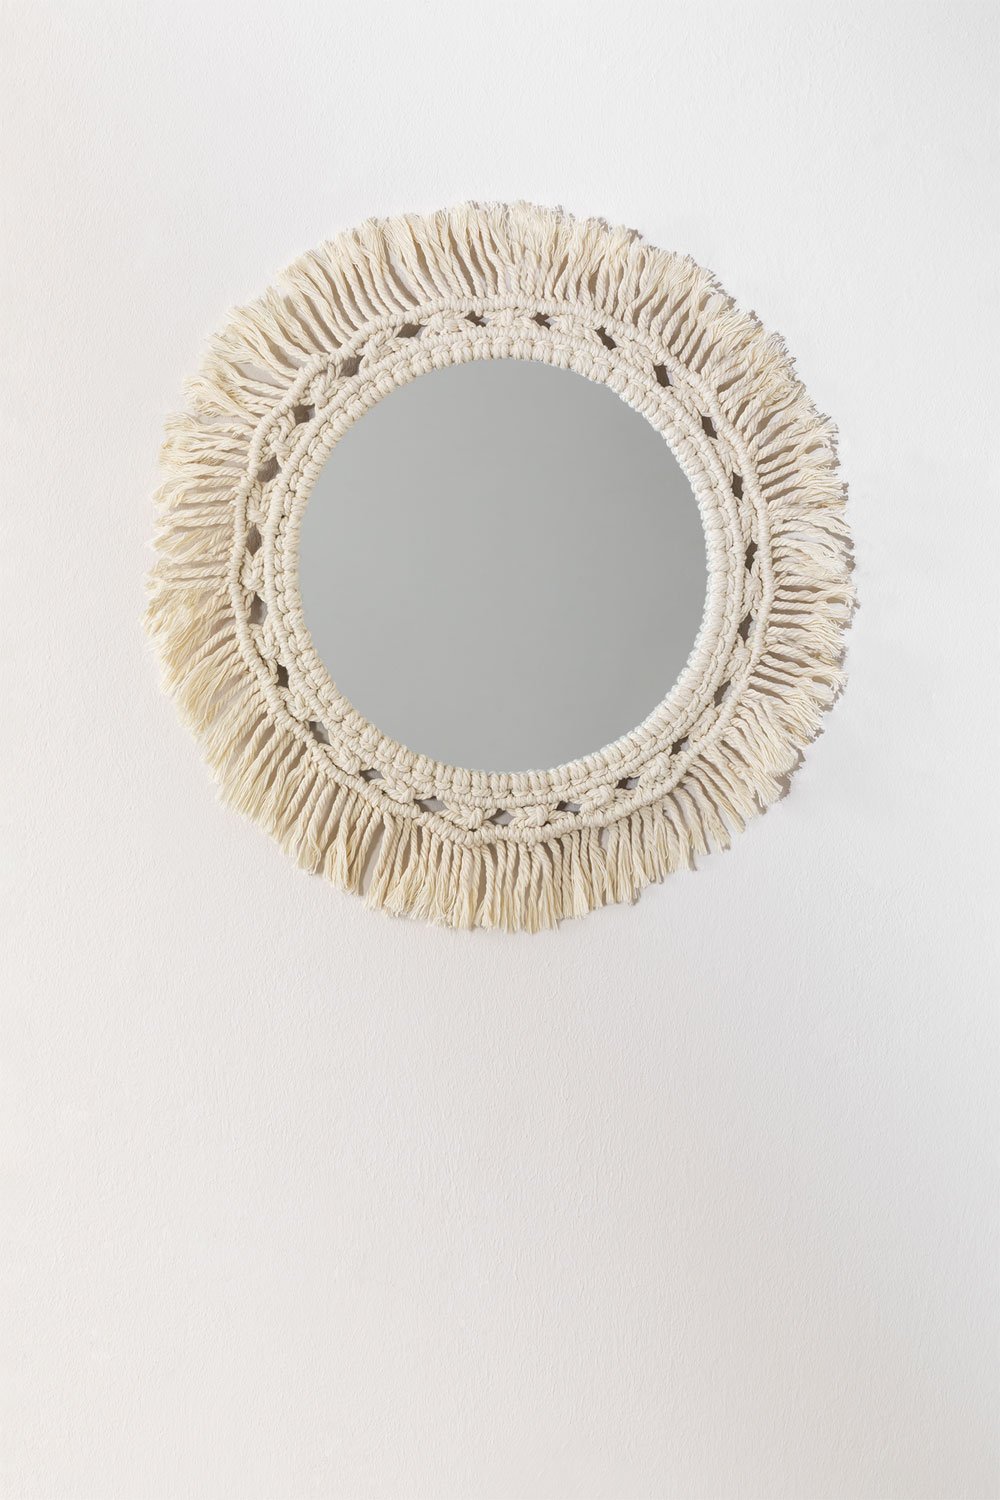 Espelho de Parede Redondo em Macramé (Ø46 cm) Antoin, imagem de galeria 1